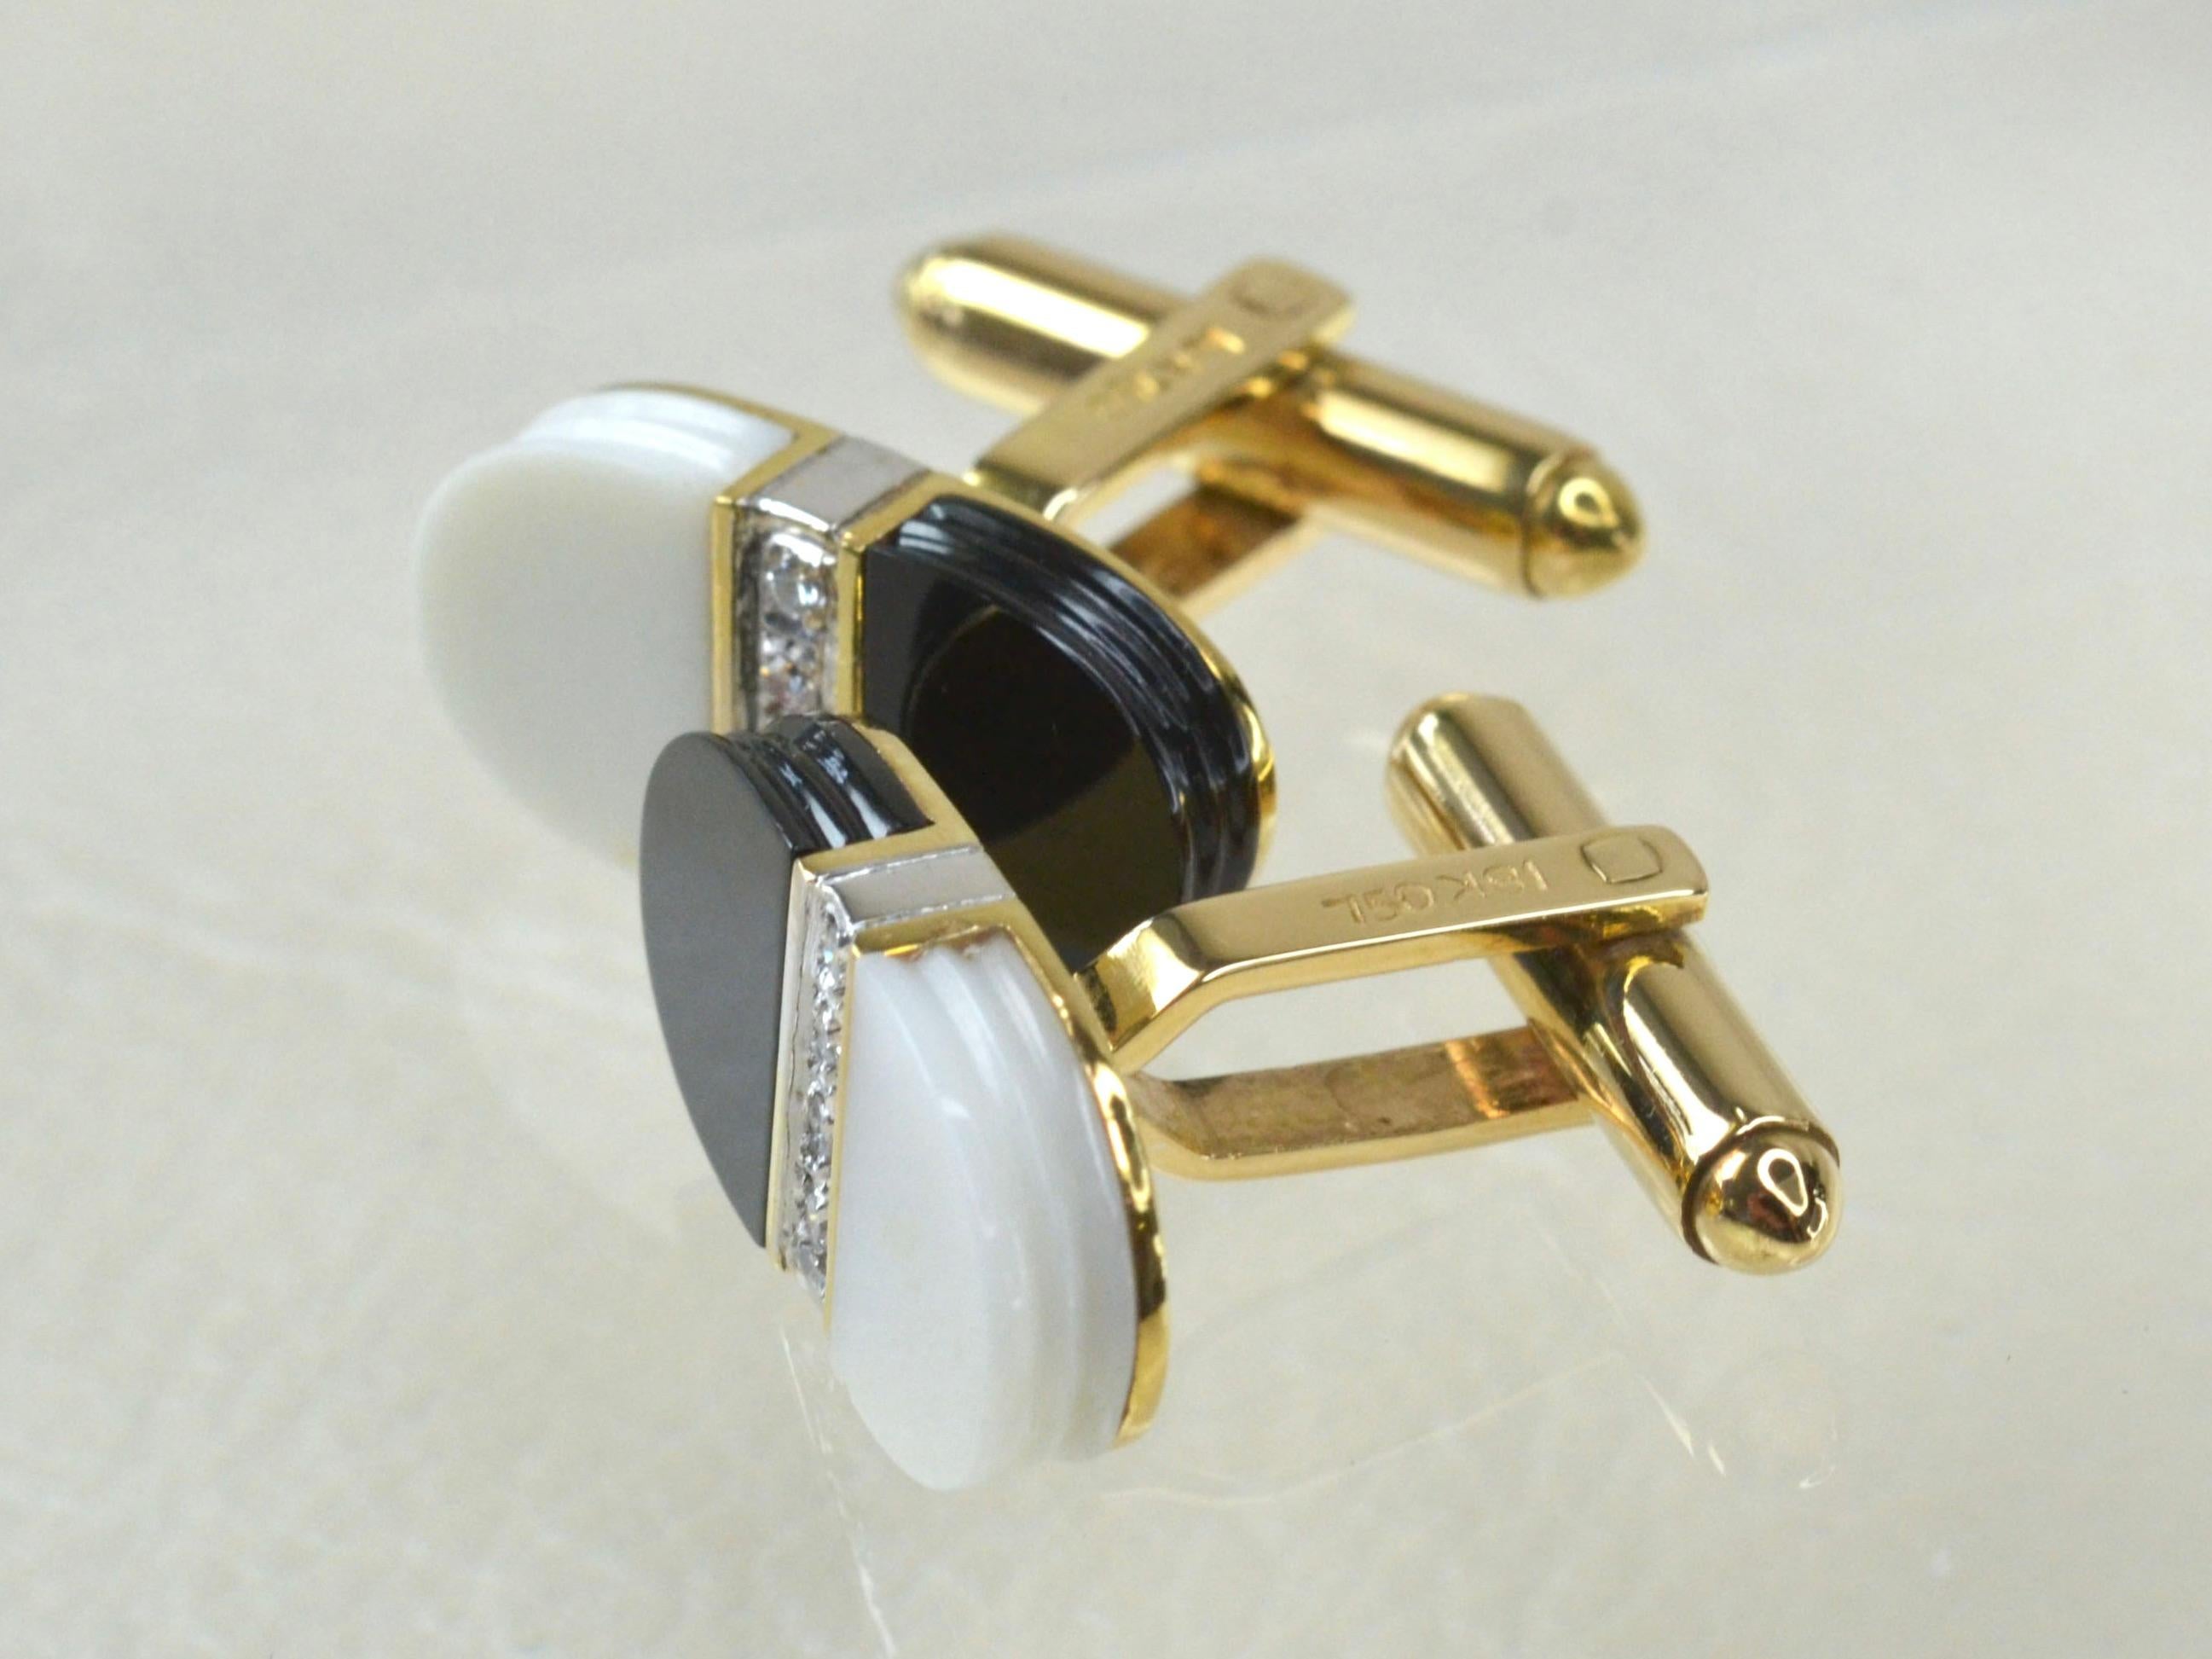 18 Karat Gold 1970er Manschettenknöpfe. Jeder Manschettenknopf besteht zur Hälfte aus schwarzem und weißem glatten Onyx, beide verziert mit vier zentralen weißen Diamanten, gefasst in Weißgold.
Unisex-Schmuck mit kontrastierenden Farben, die durch